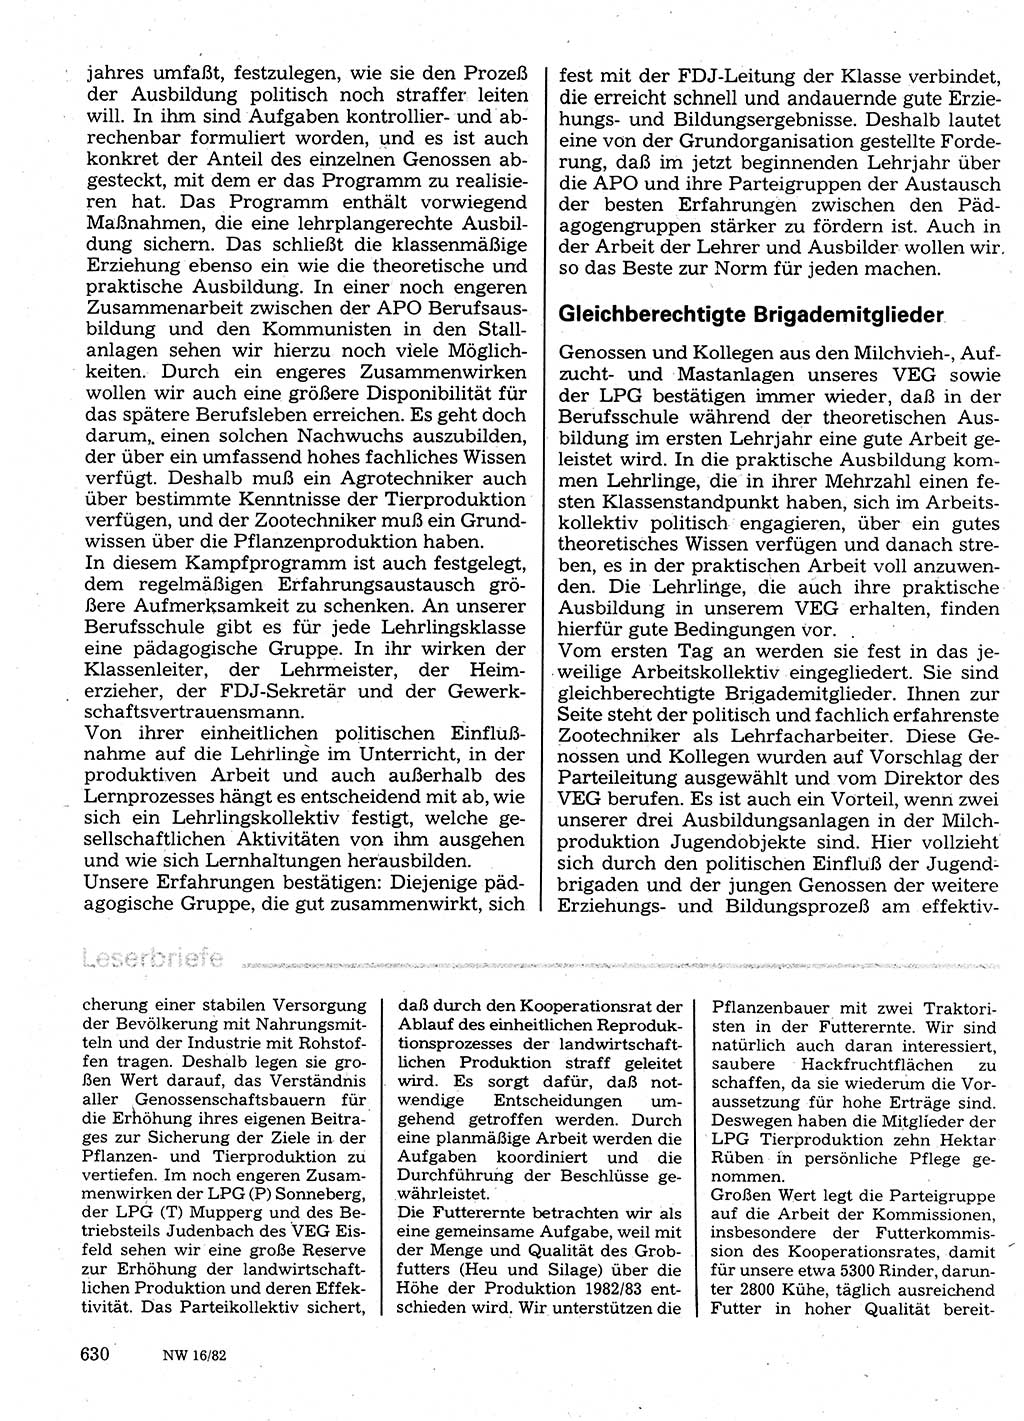 Neuer Weg (NW), Organ des Zentralkomitees (ZK) der SED (Sozialistische Einheitspartei Deutschlands) für Fragen des Parteilebens, 37. Jahrgang [Deutsche Demokratische Republik (DDR)] 1982, Seite 630 (NW ZK SED DDR 1982, S. 630)